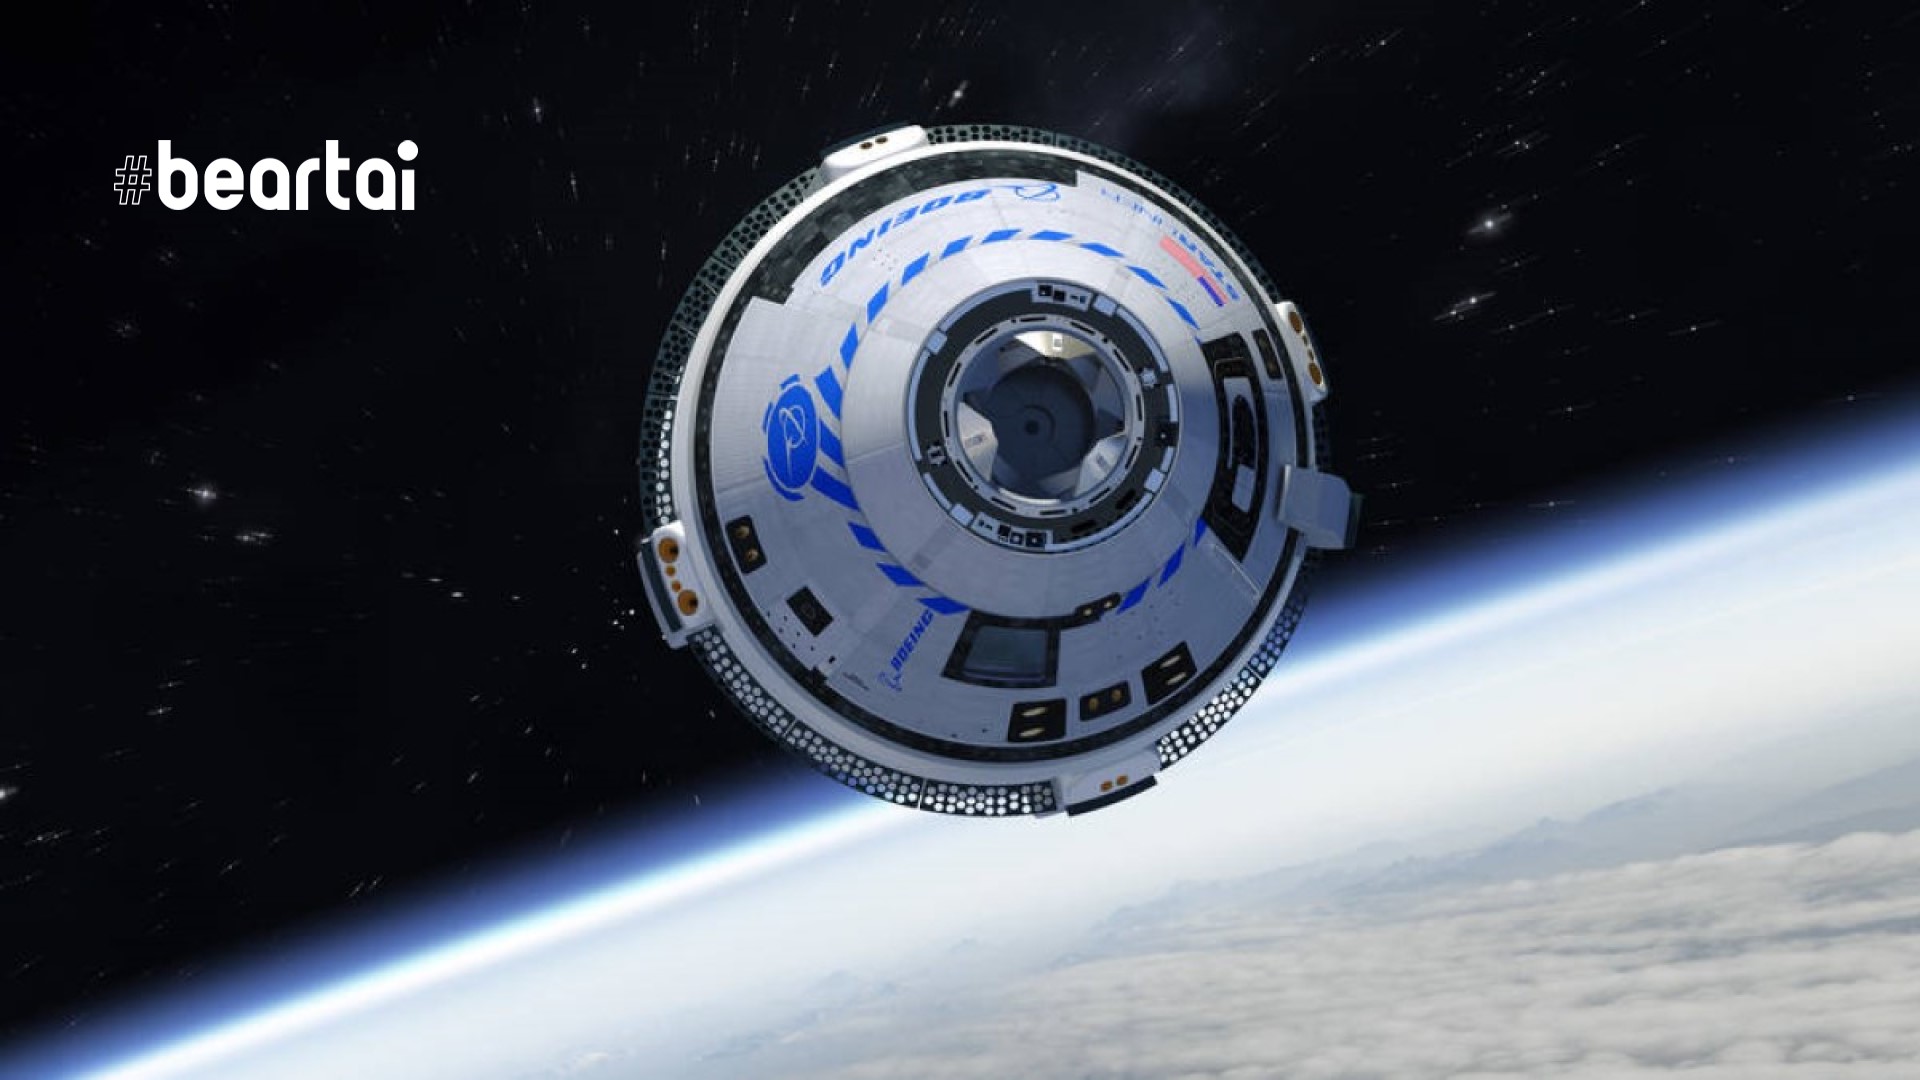 แคปซูลอวกาศ Starliner ของโบอิ้งสามารถทดสอบระบบลงจอดด้วยร่มชูชีพได้สำเร็จ